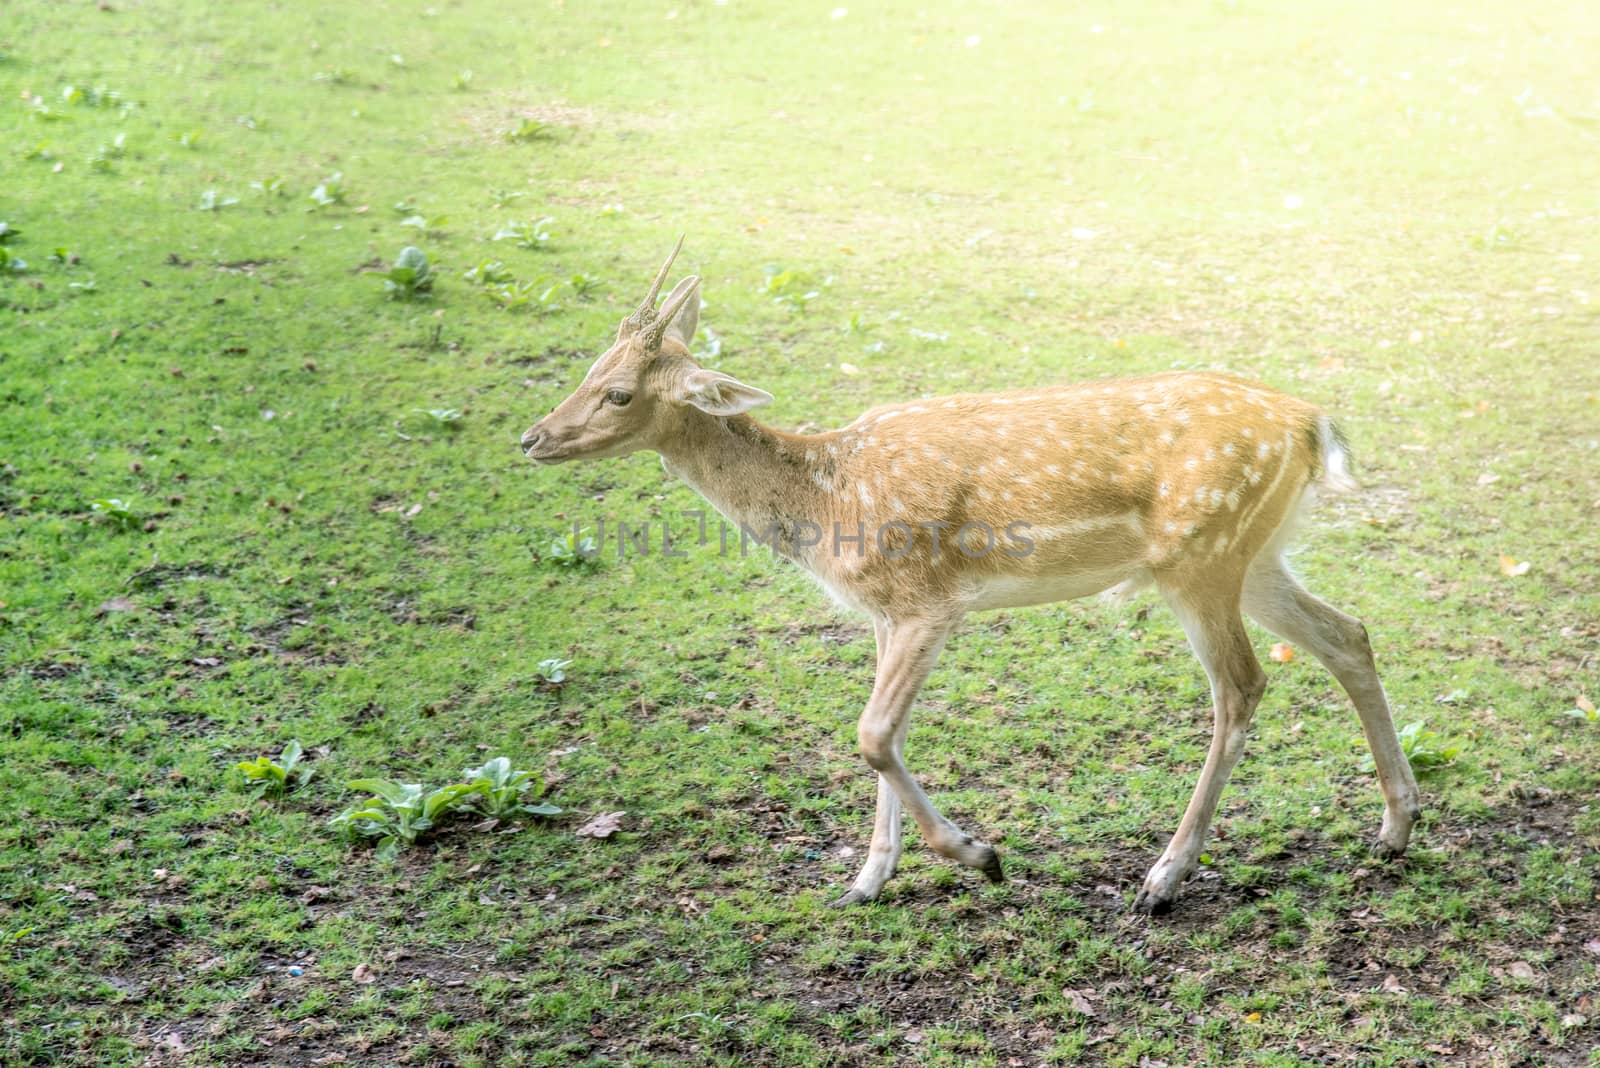 Young fallow deer, dama dama, on a pasture